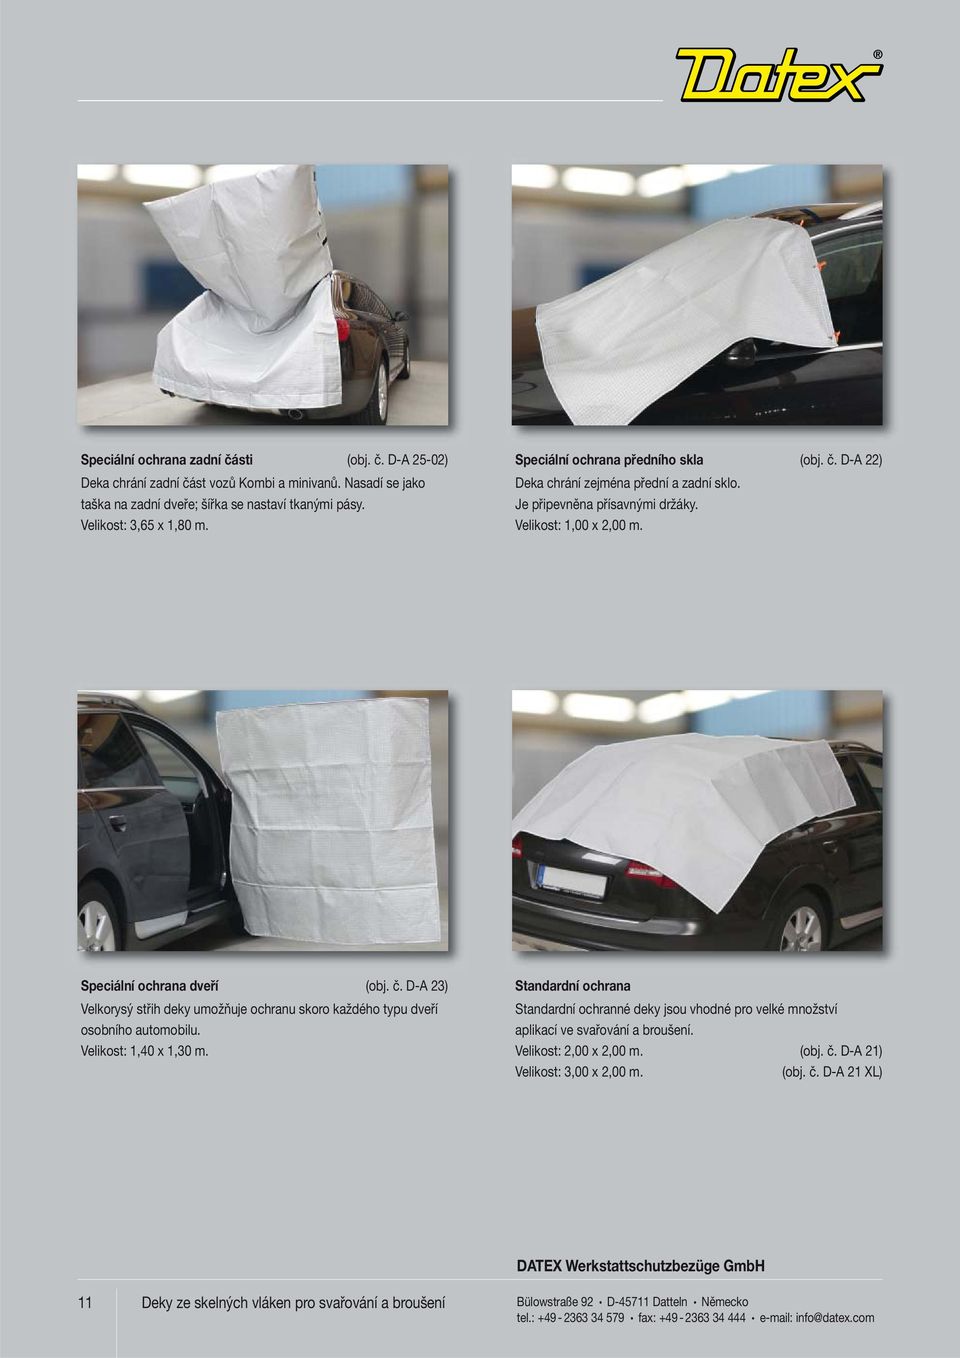 Velikost: 1,40 x 1,30 m. Standardní ochrana Standardní ochranné deky jsou vhodné pro velké množství aplikací ve svařování a broušení. Velikost: 2,00 x 2,00 m. (obj. č. D-A 21) Velikost: 3,00 x 2,00 m.